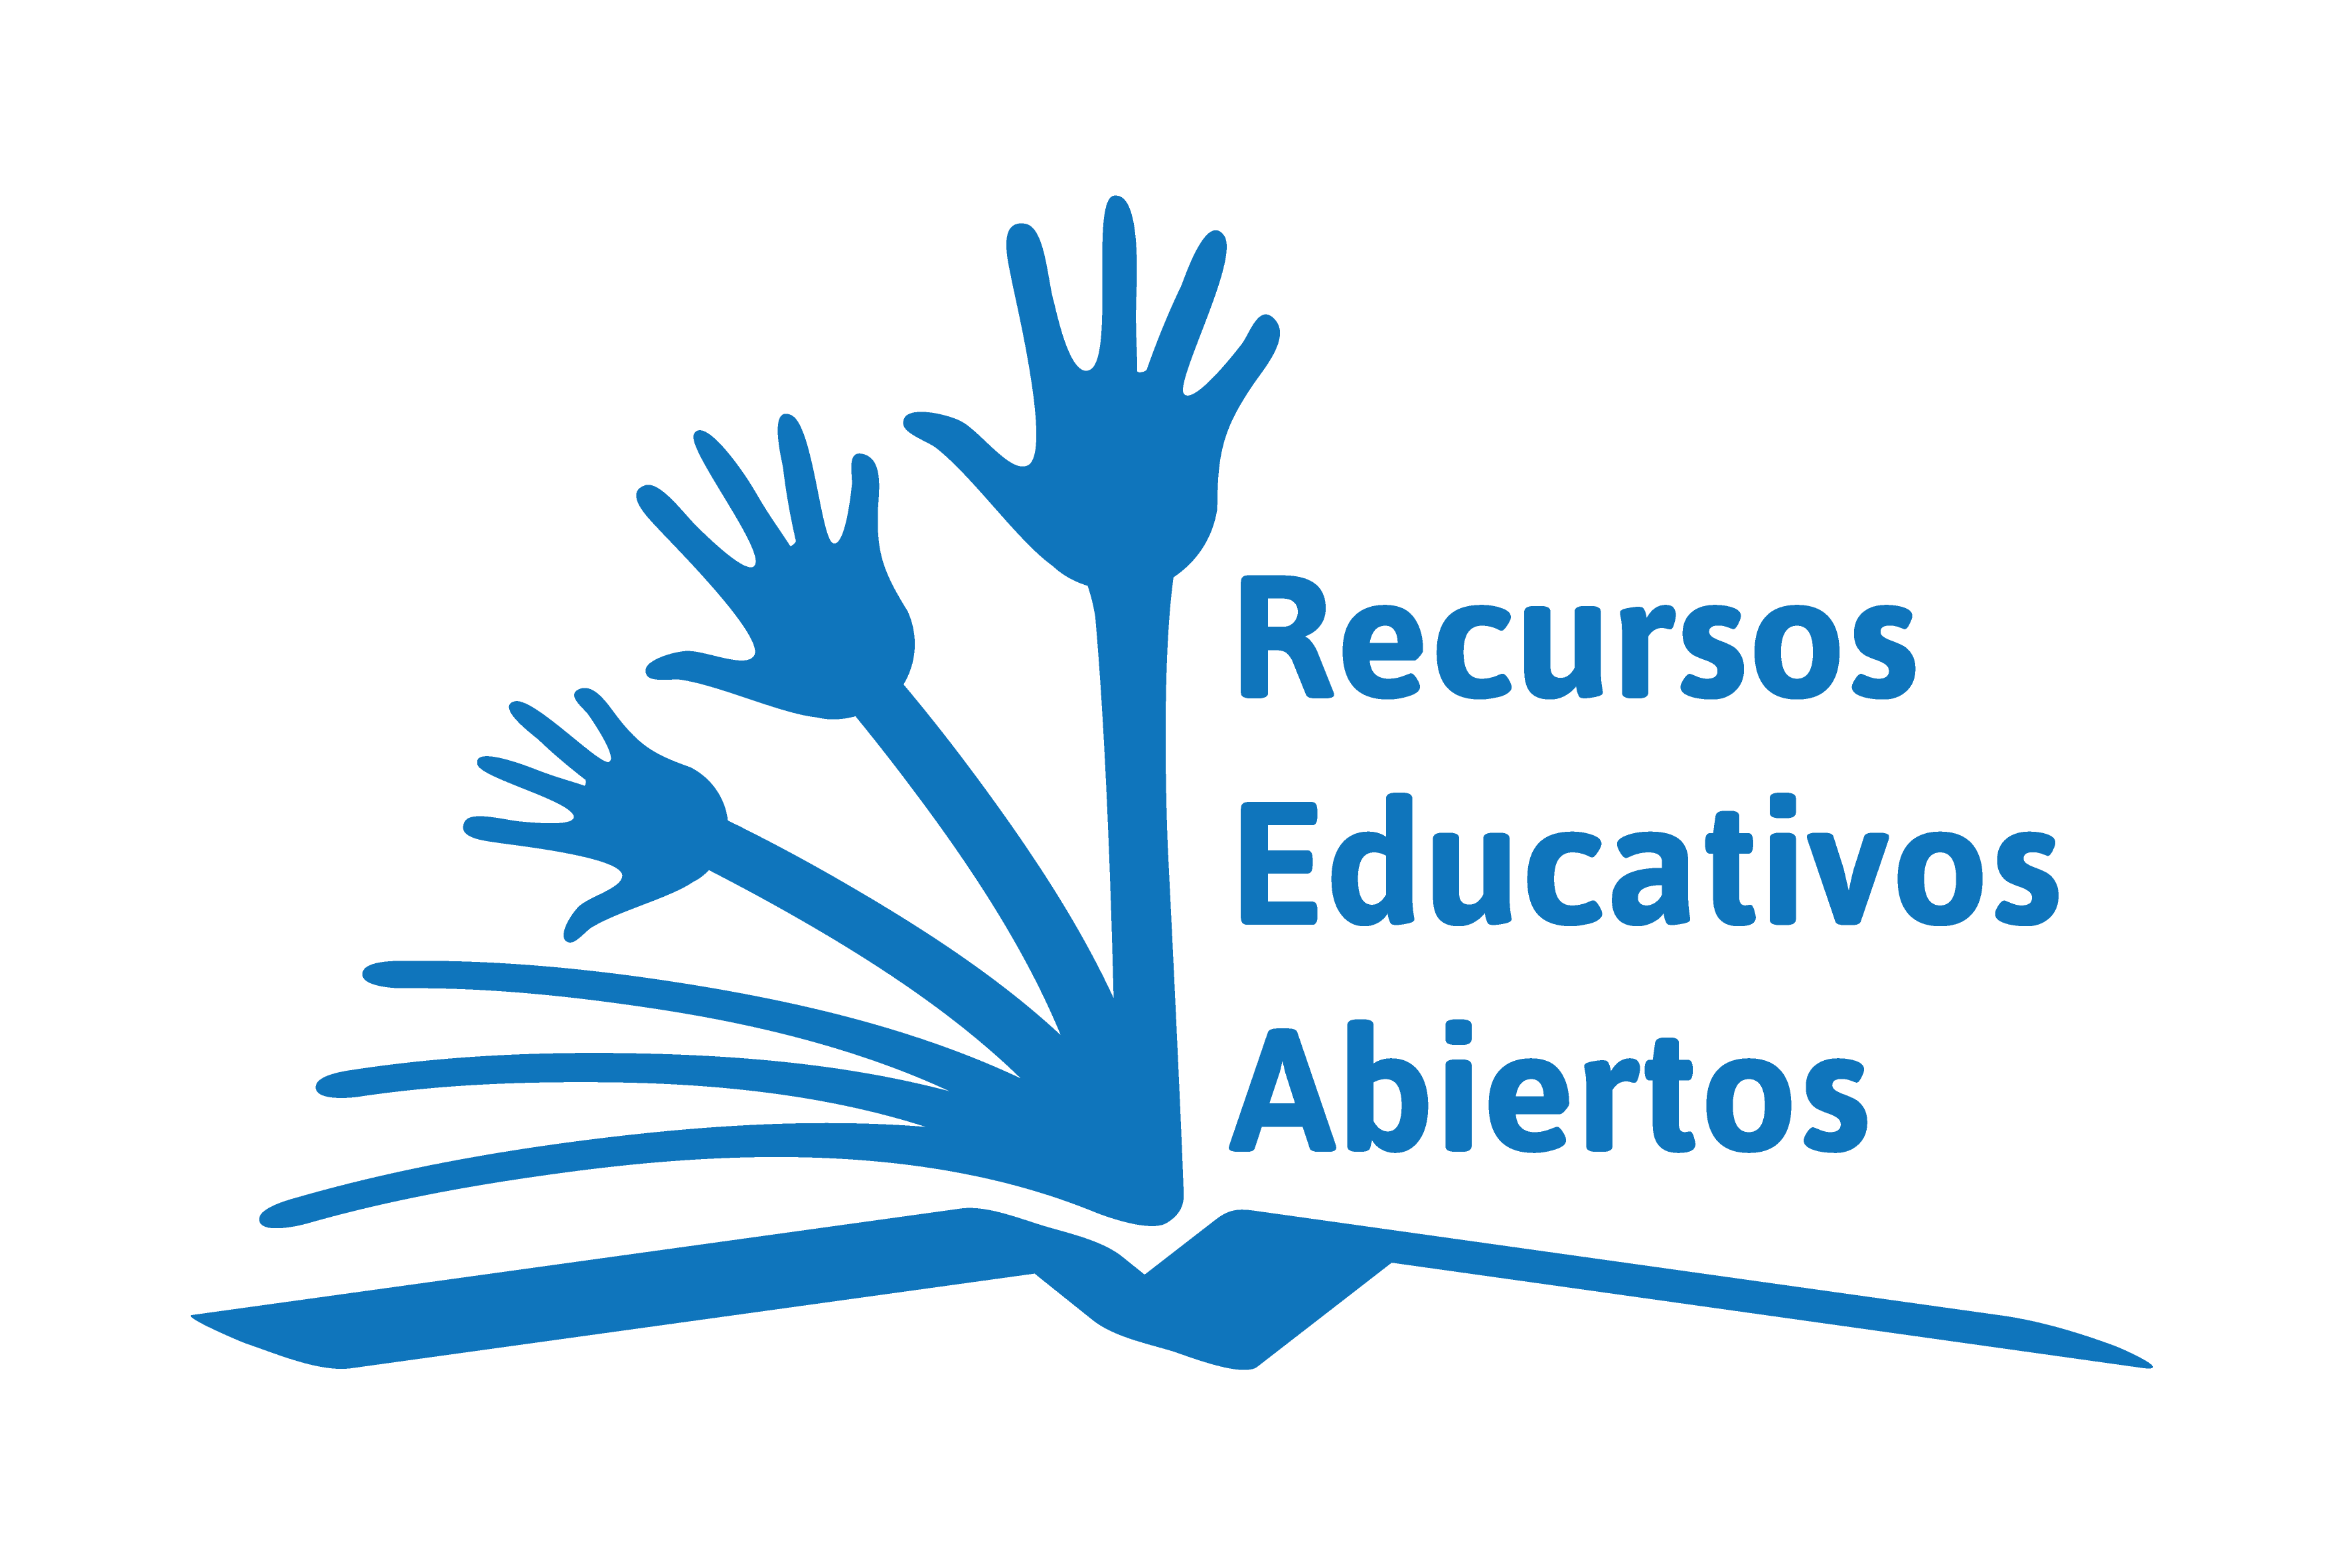 Innovación educativa con Recurso Educativos Abiertos (REA)